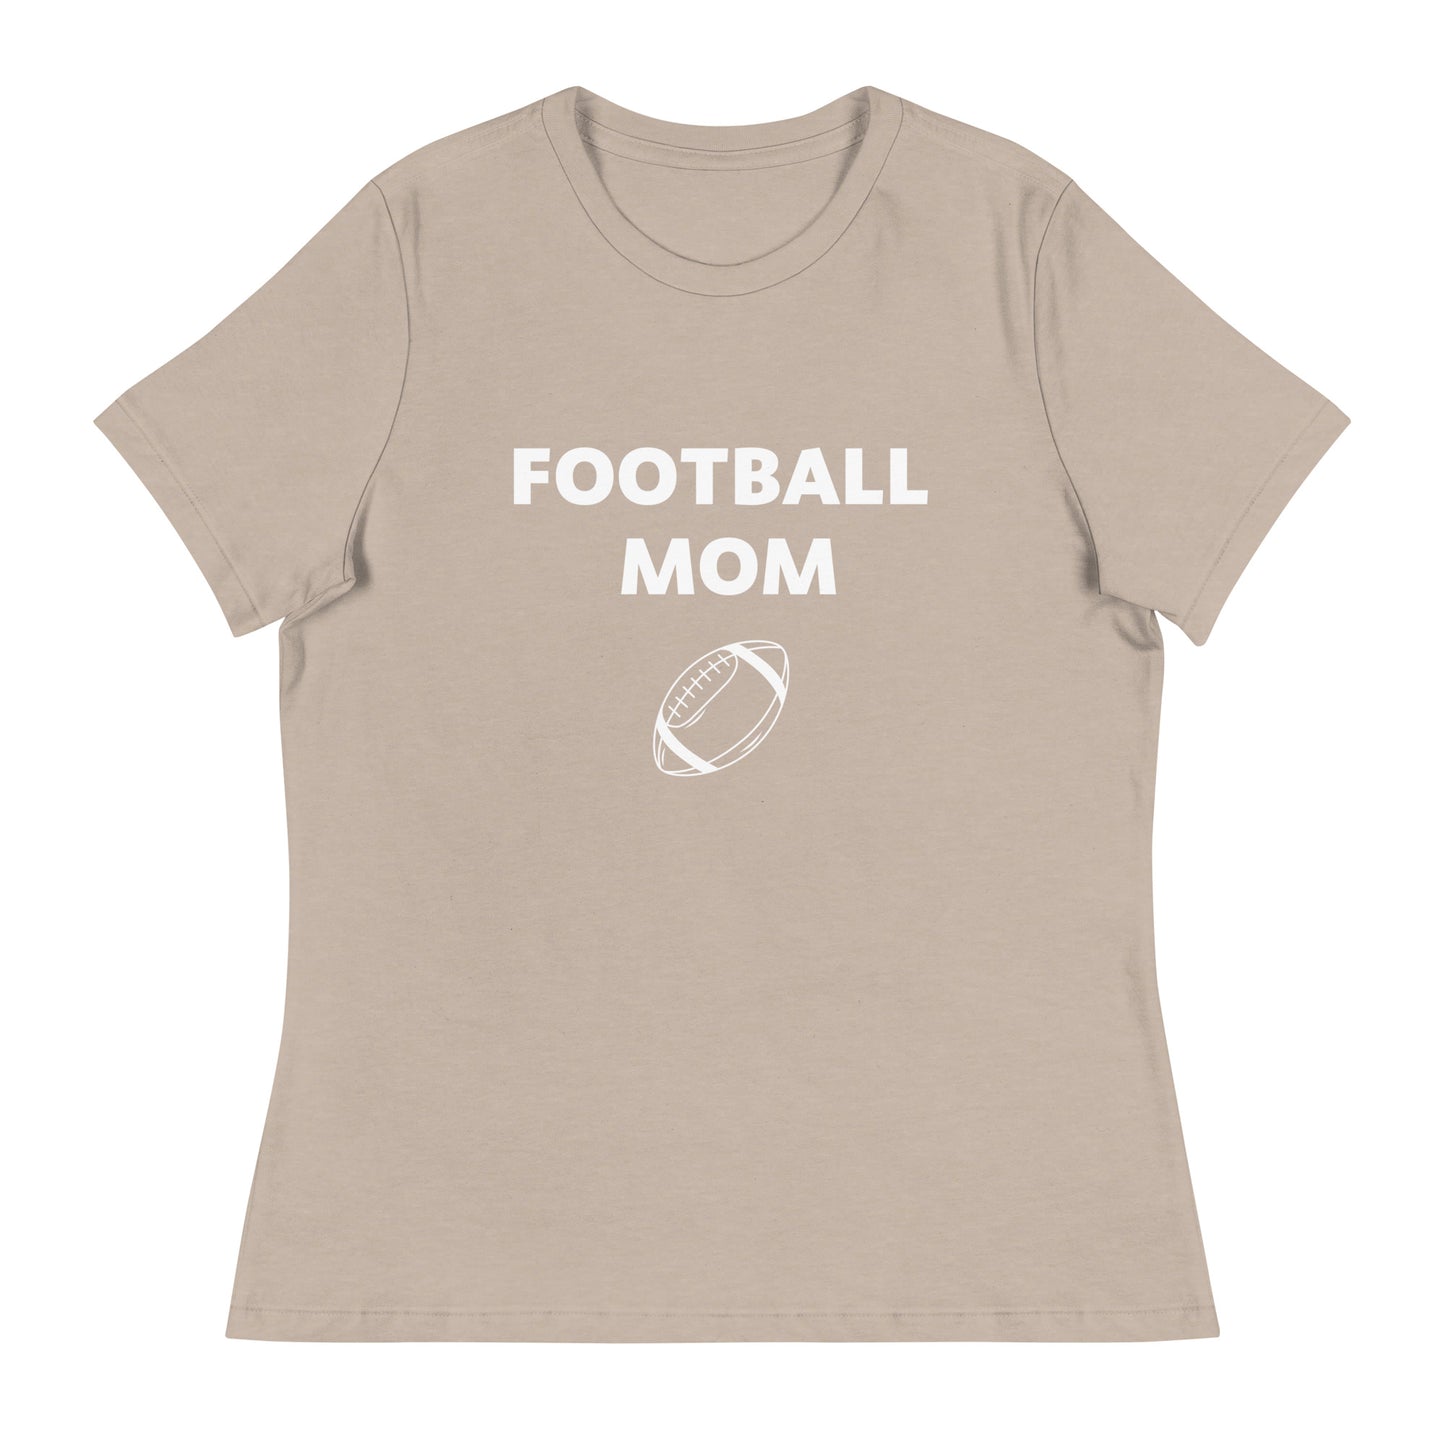 Football Mom Printed T-Shirt